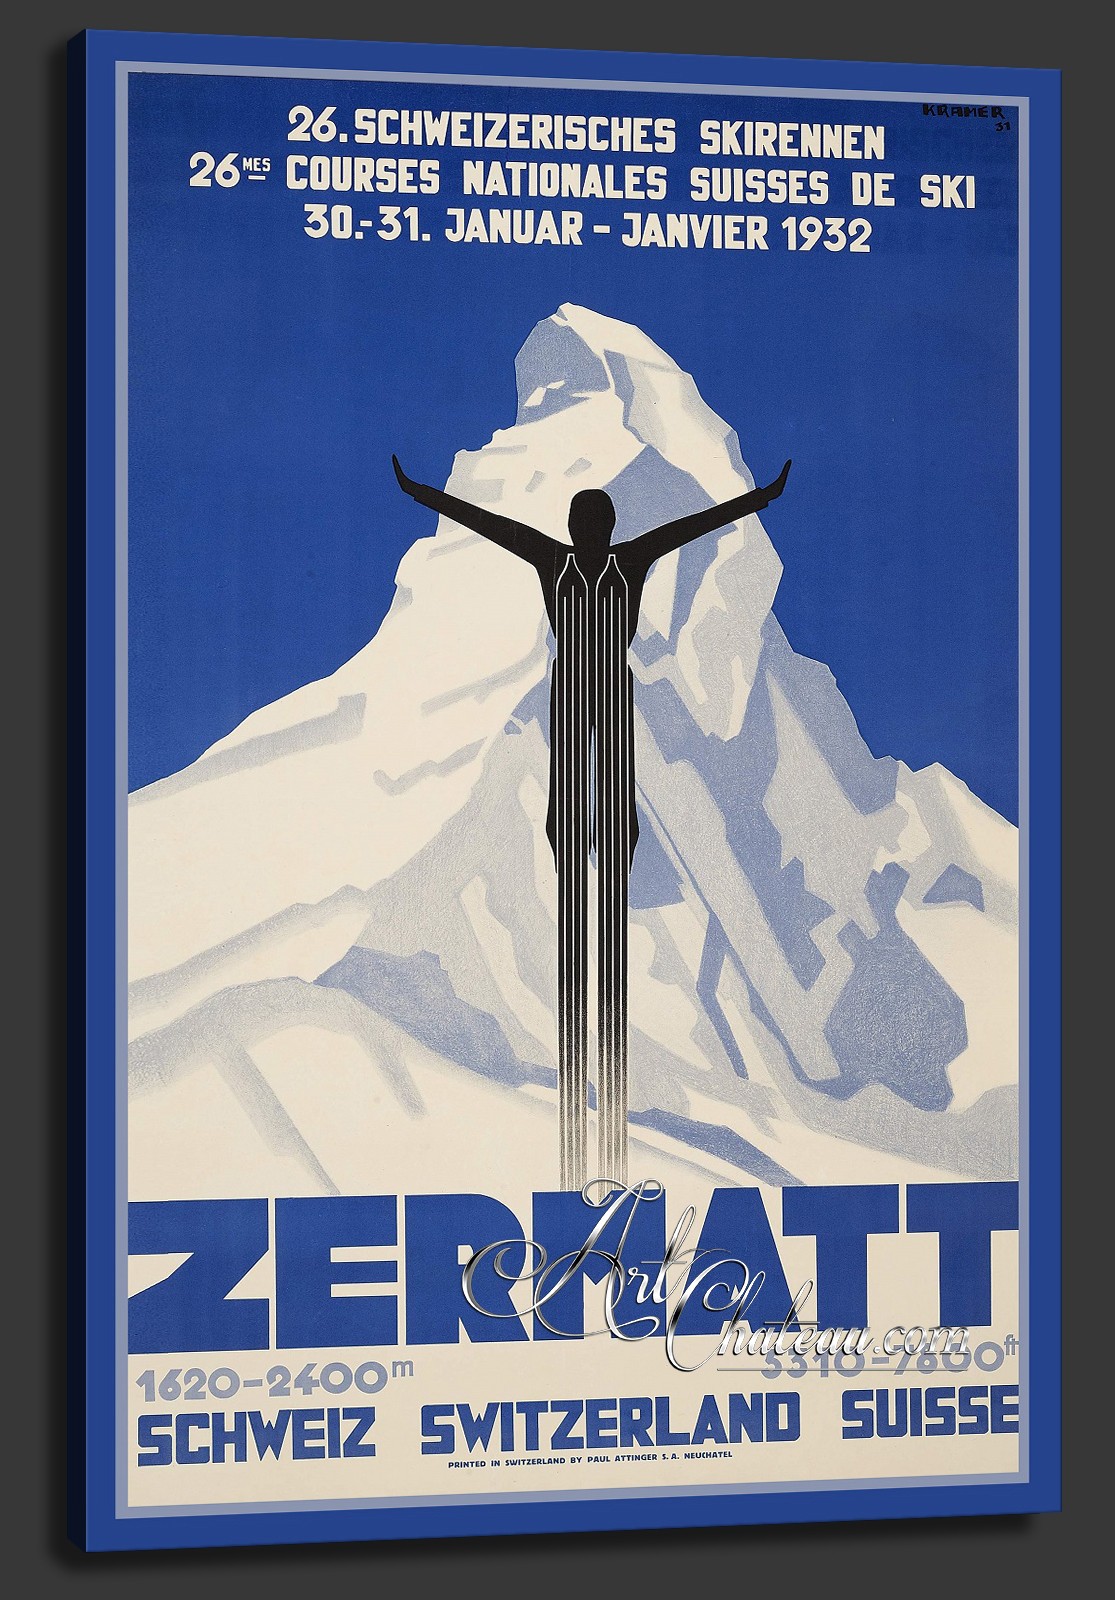 Vintage Style, Zermatt Travel Poster, after Pierre Kramer